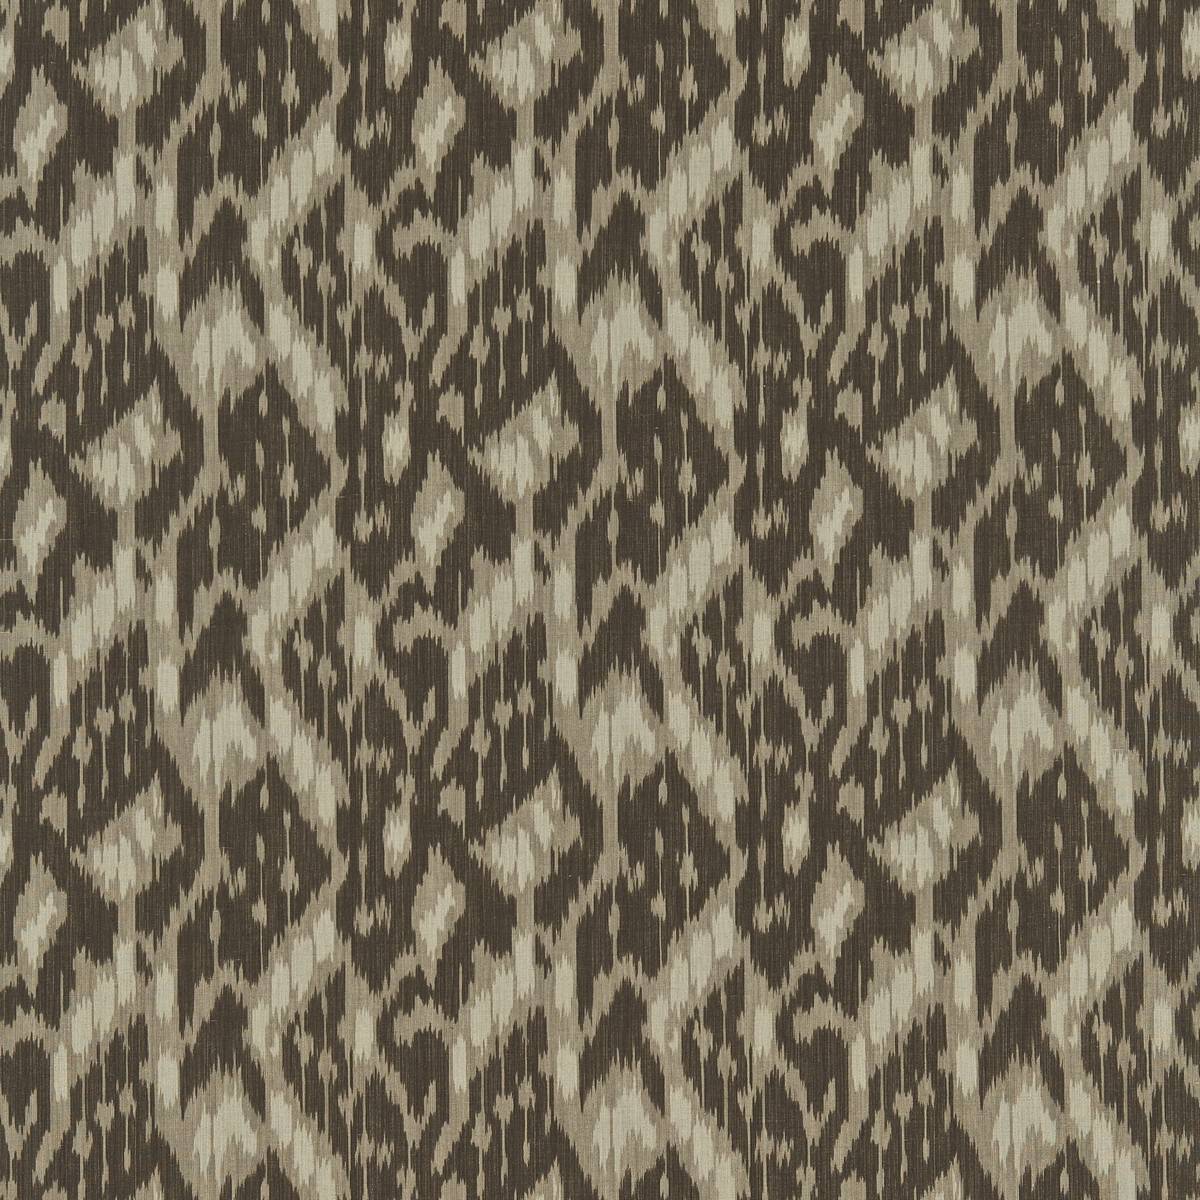 Simla Charcoal Fabric by Zoffany